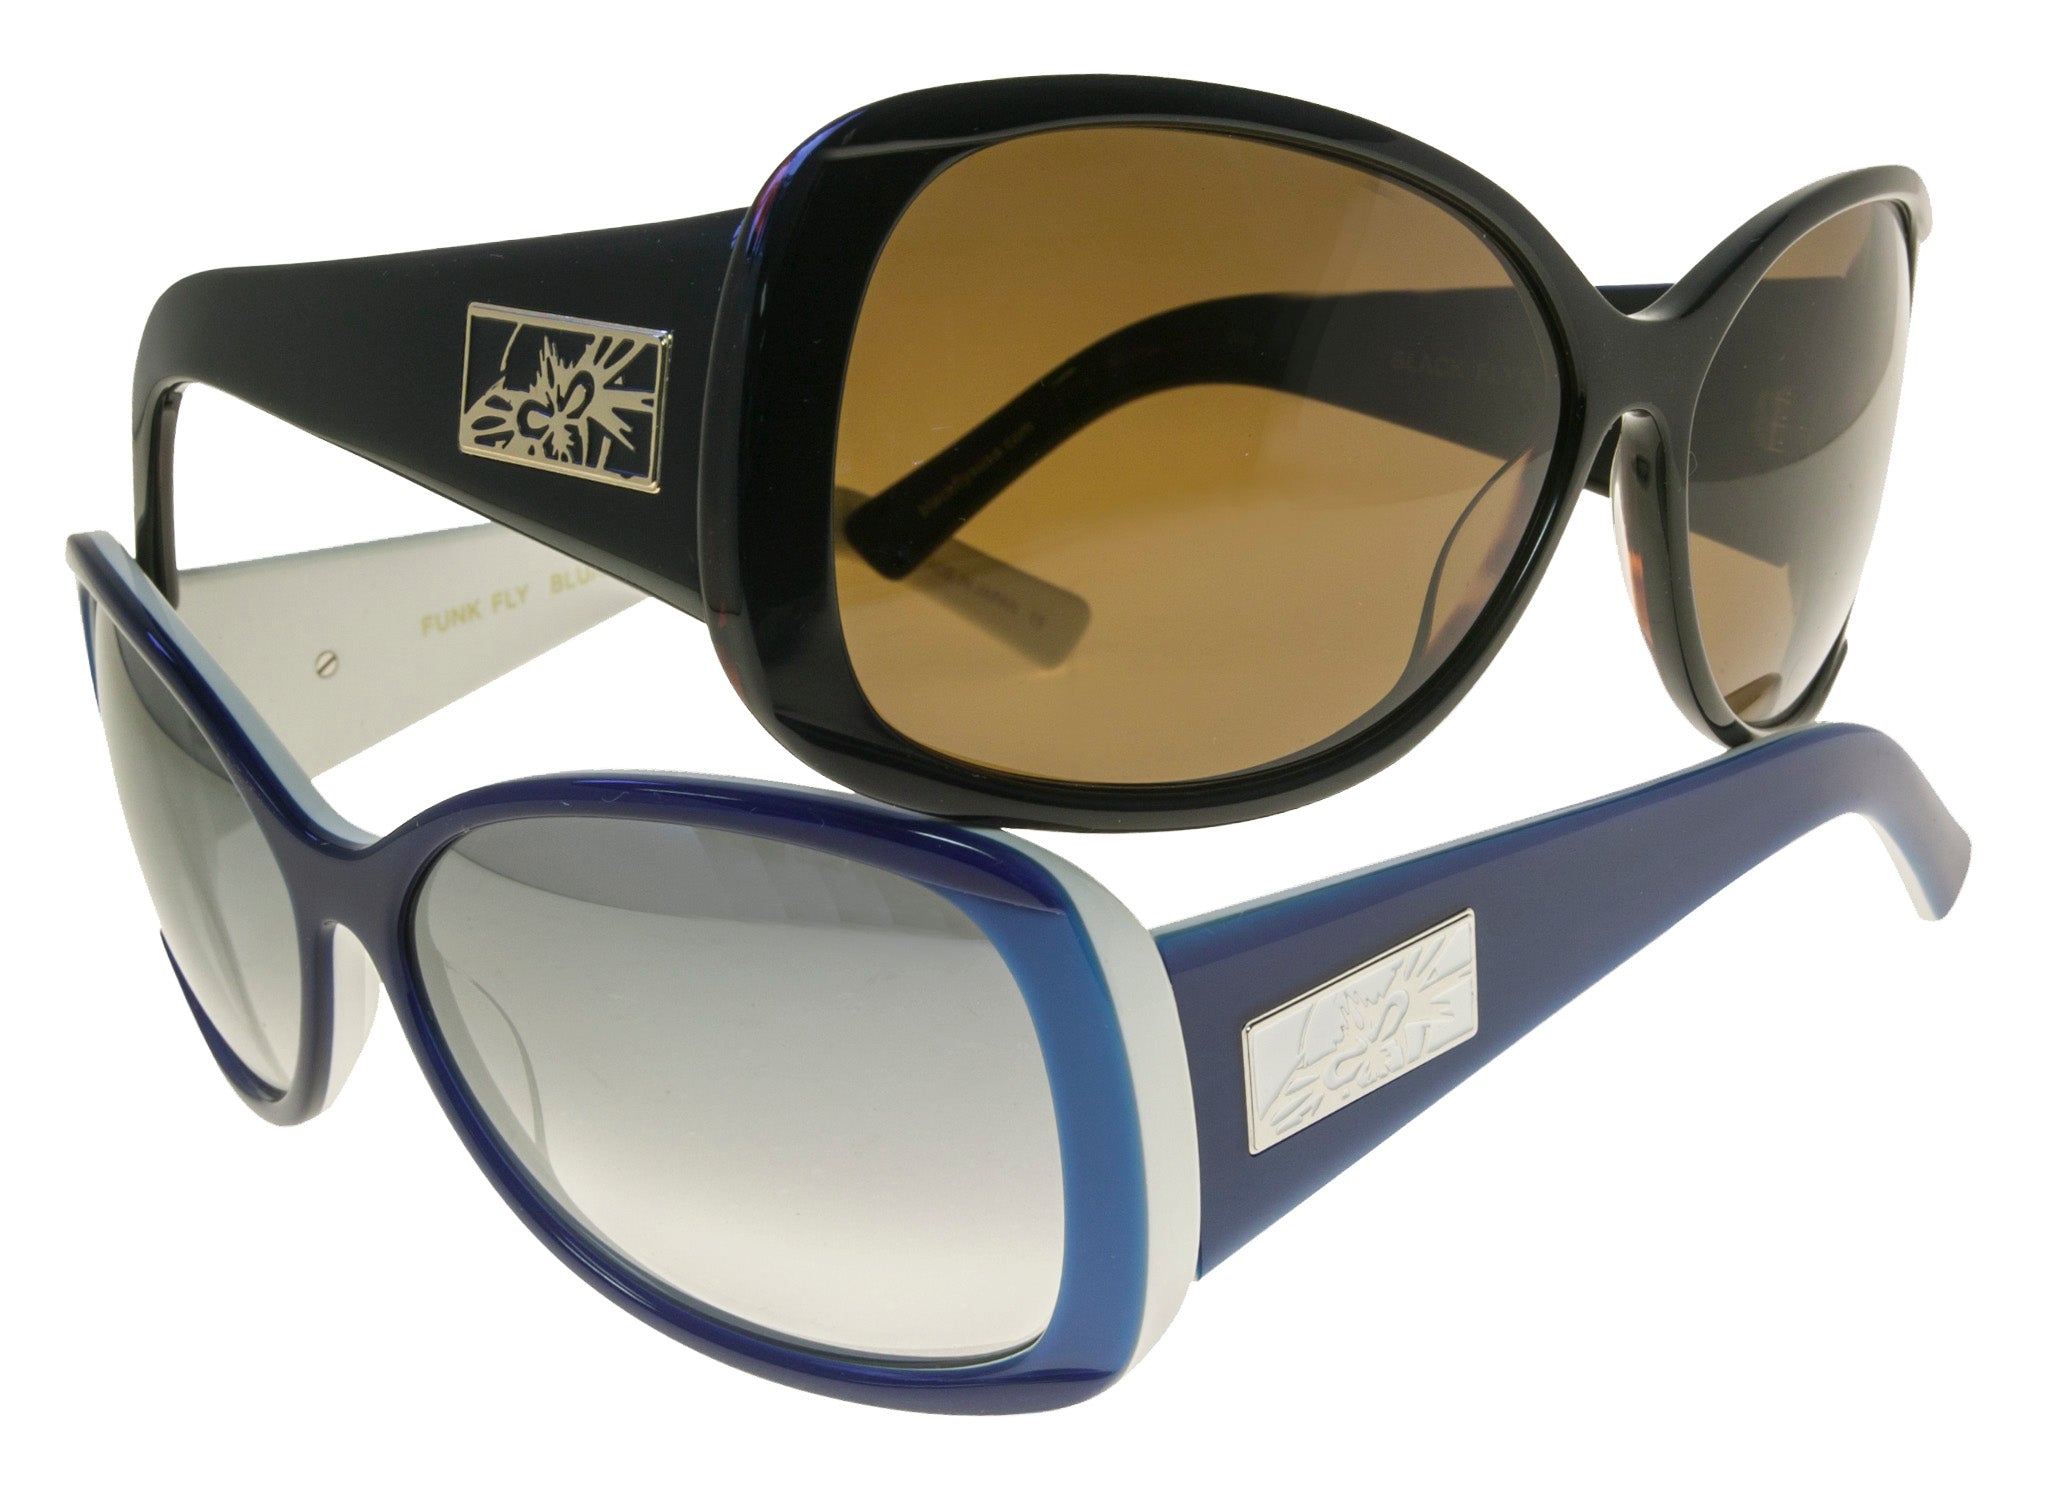 Buy FUNK sunglasses for men & women Black pack of 1 Online at Best